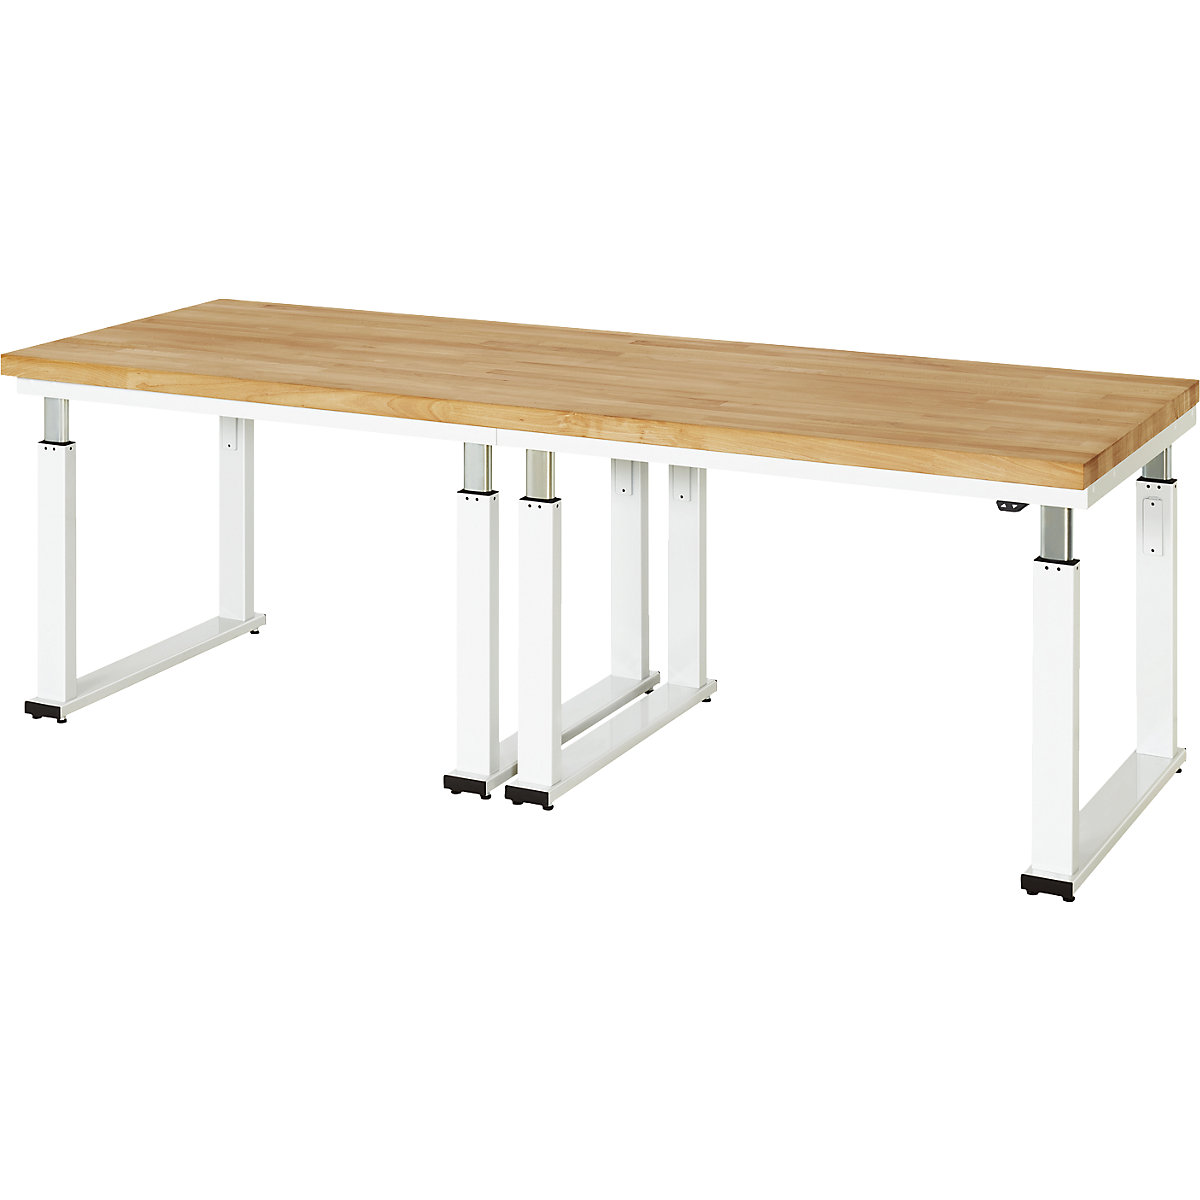 Psací stůl s elektrickým přestavováním výšky – RAU, bukový masiv, nosnost 600 kg, š x h 2500 x 900 mm-5